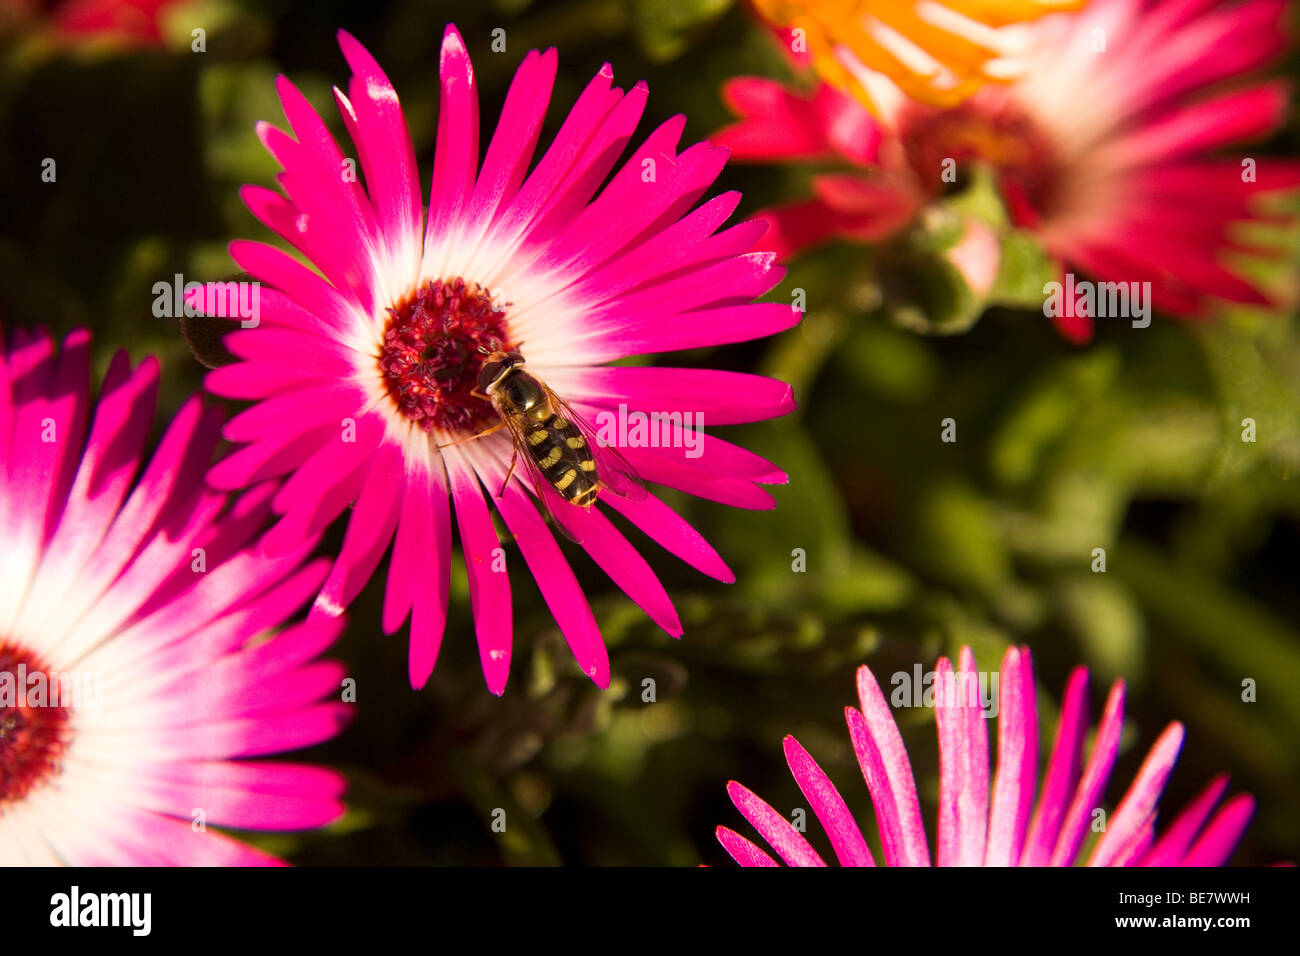 Eine Biene sammelt Pollen von einer lila Livingstone Daisy Blume in Nordengland. Die Blumen blühen im September. Stockfoto